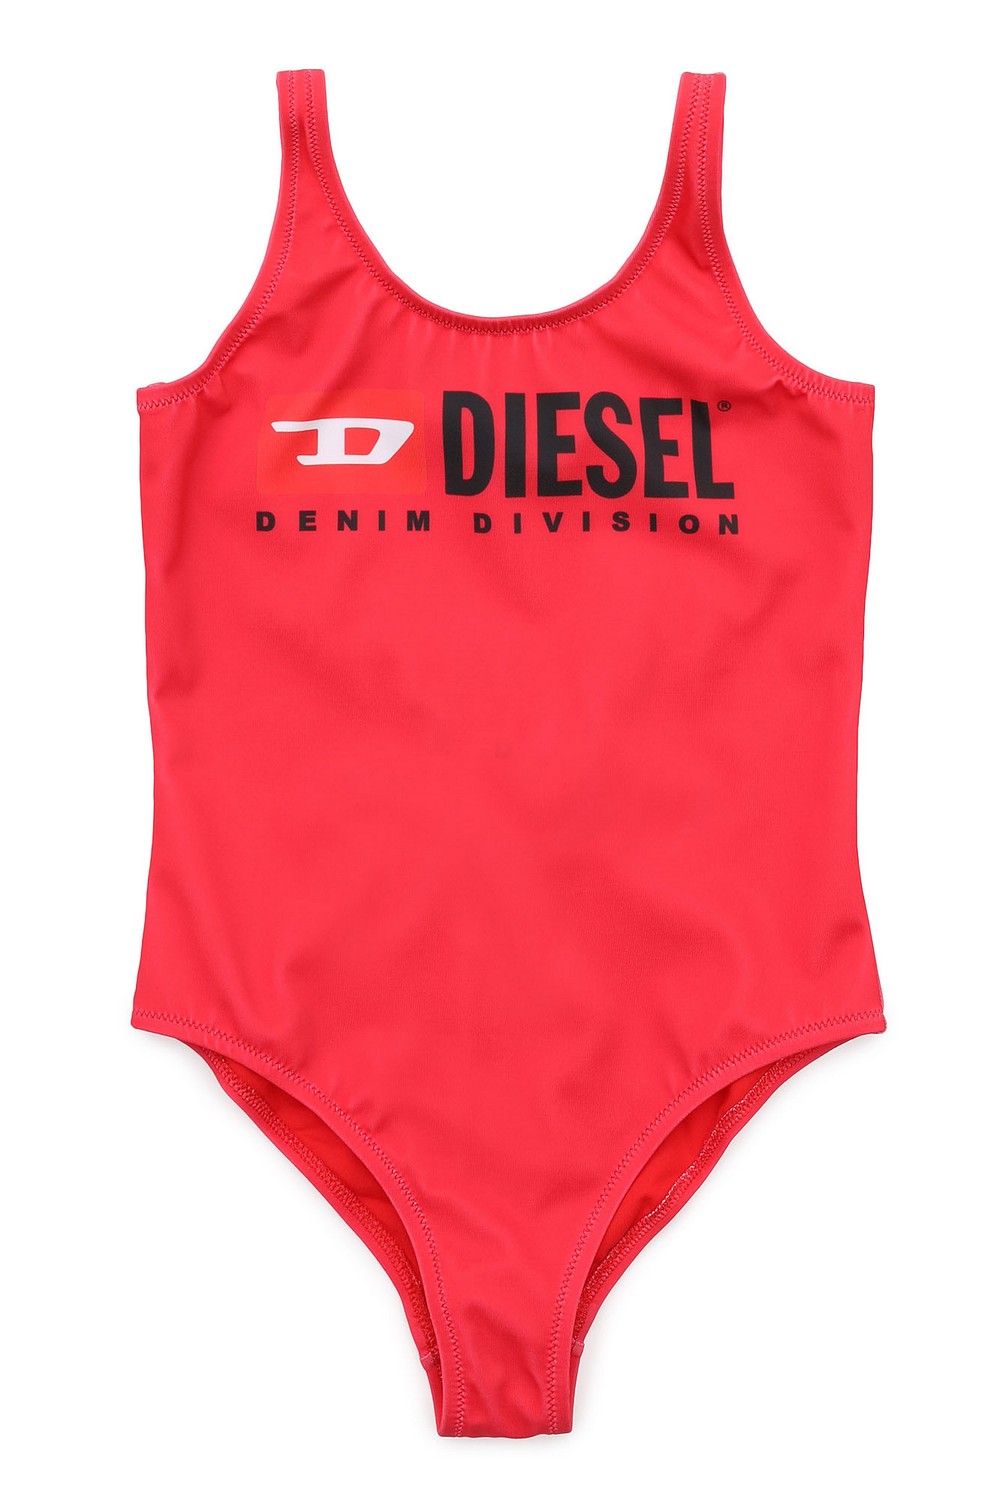 Diesel Beach Слитный купальник с надписью-логотипом